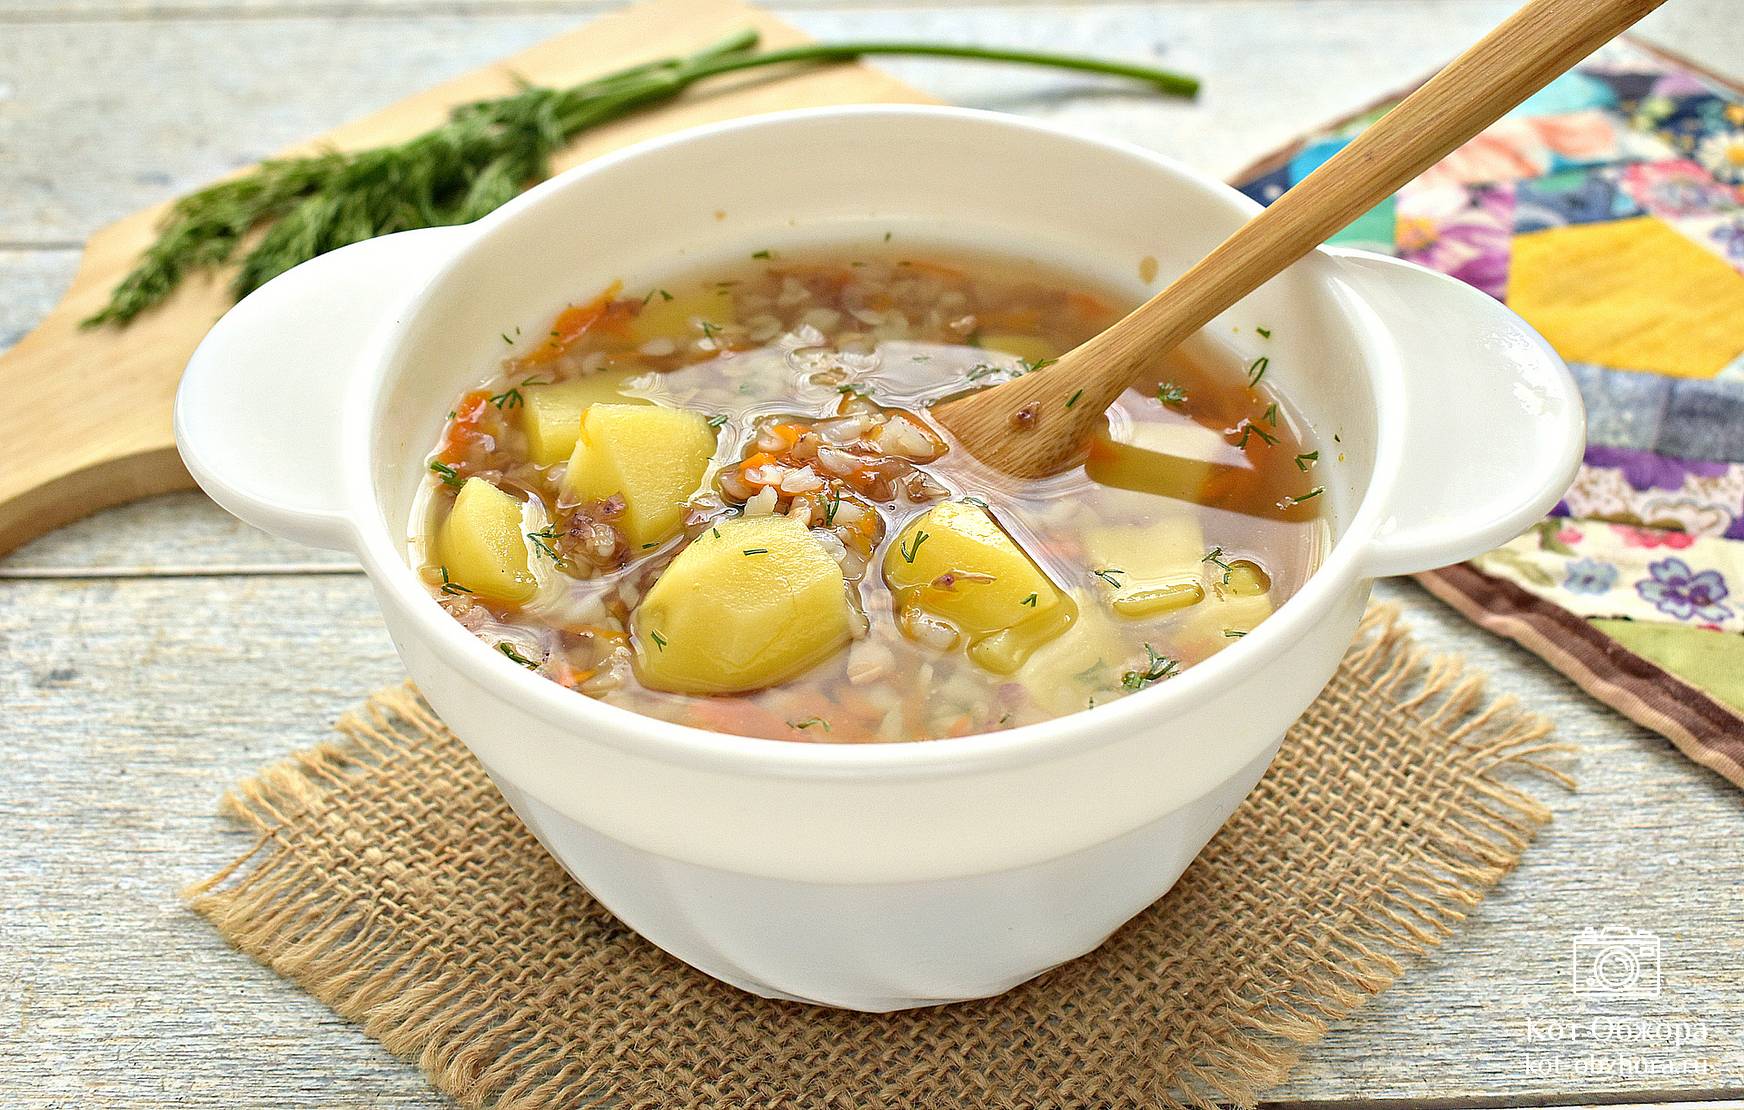 Гречневый суп с курицей и овощами - рецепт с фото на Пошагово ру